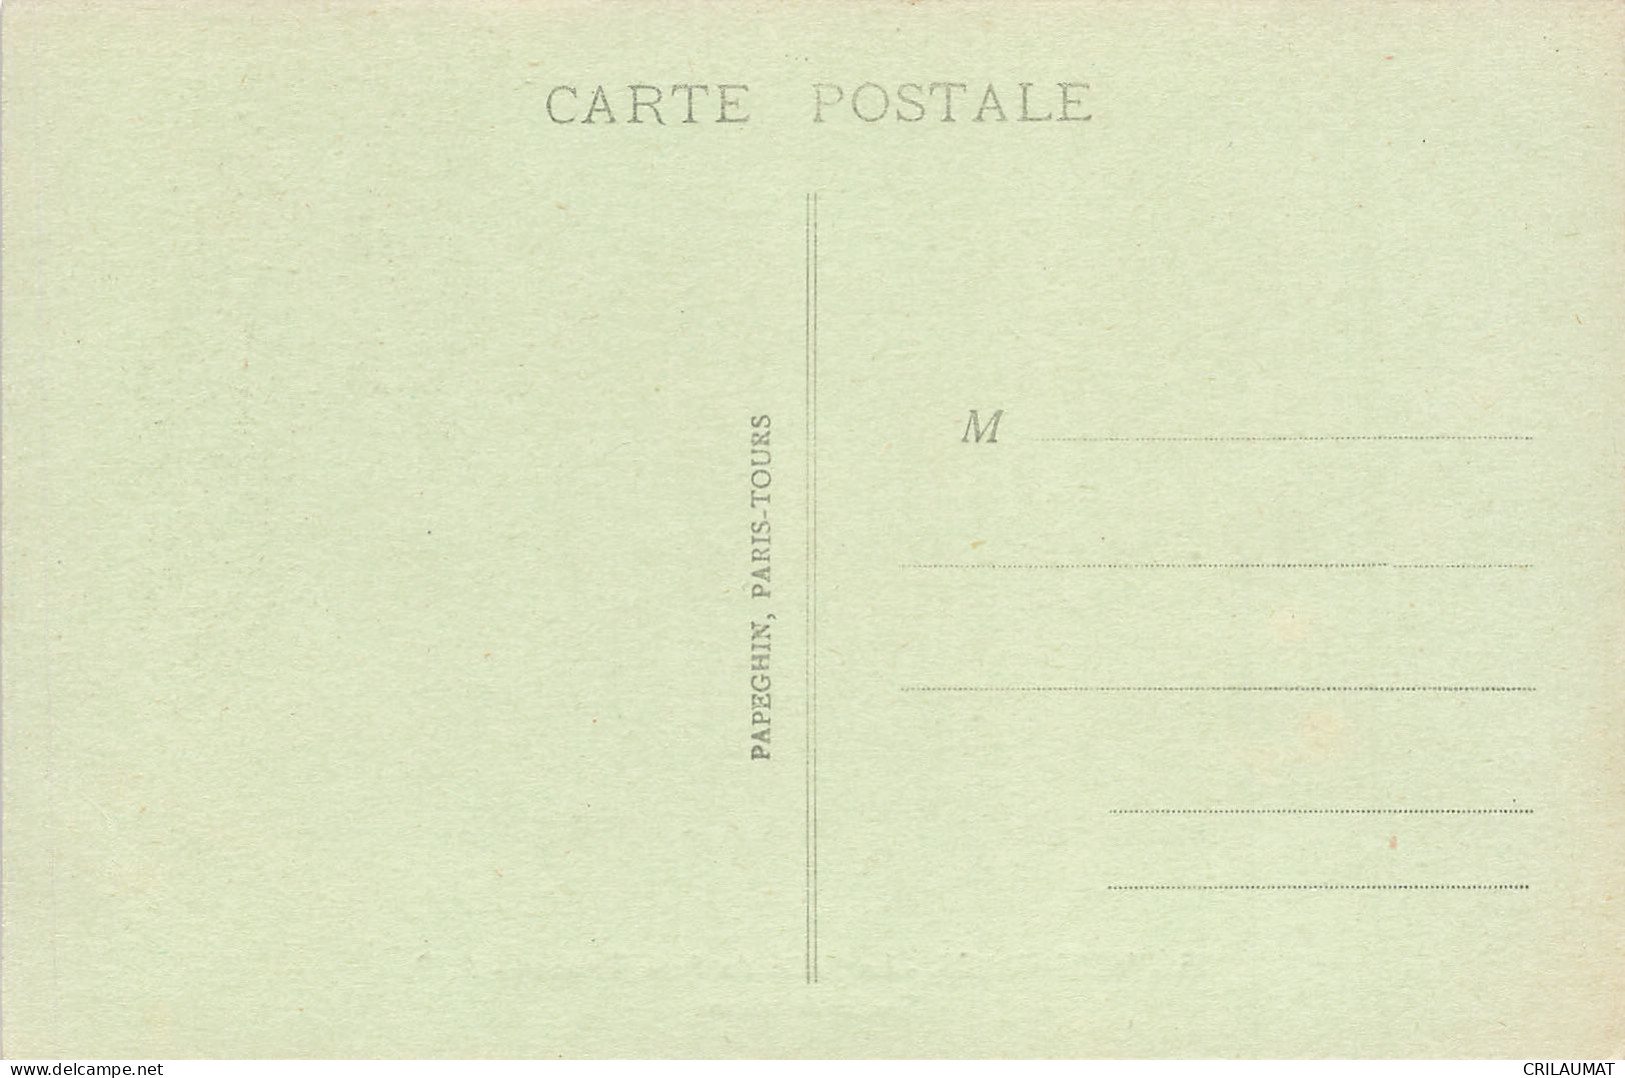 78-VERSAILLES LE PALAIS DU PETIT TRIANON-N°T5279-F/0261 - Versailles (Château)